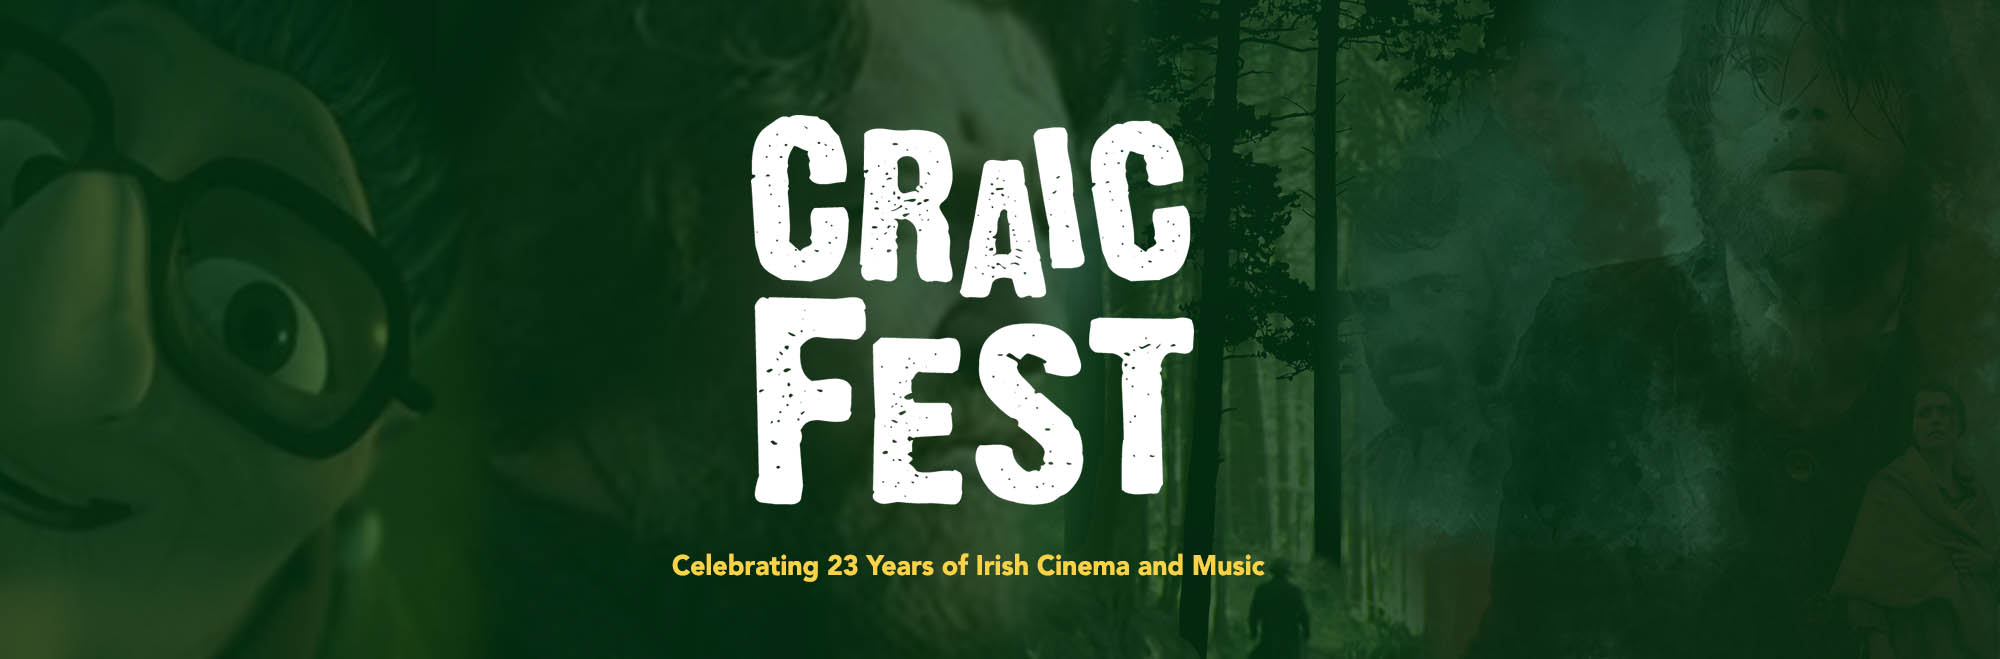 Craicfest 2021 celebrates 23-years of Irish Cinema and Music